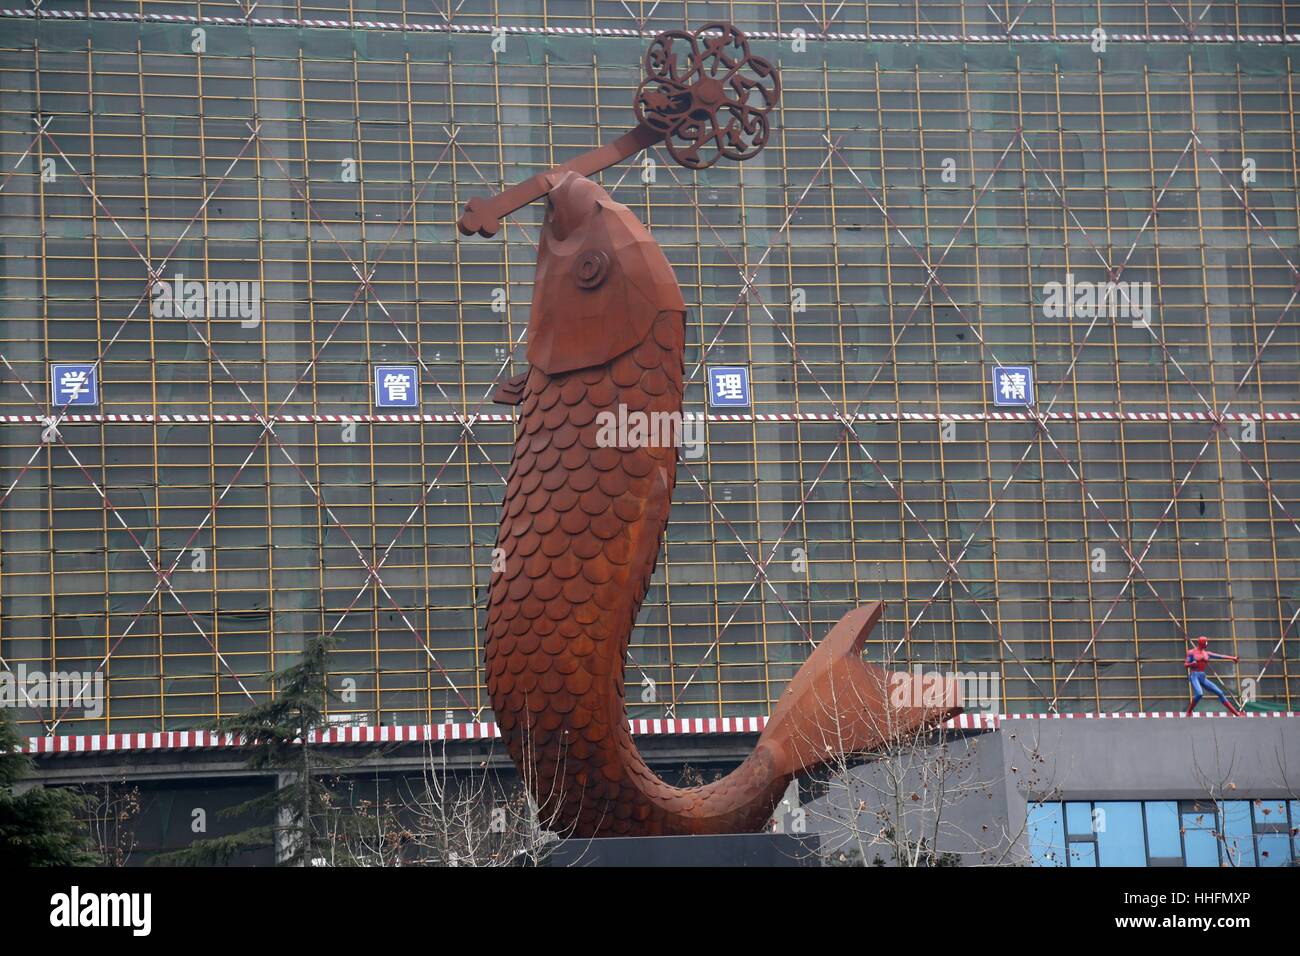 Zhengzhou, China. 18. Januar 2017. (NUR ZUR REDAKTIONELLEN VERWENDUNG. CHINA aus) eine riesige Skulptur der Karpfen zeigt auf der Straße in Zhengzhou, Hauptstadt der Provinz Zentral-China Henan. Die Karpfen 22 Meter hohen Skulptur, entworfen von dem Künstler Huang Guorui, kostet mehr als 800.000 Yuan (US$ 117.027). Menschen sehen ein riesiges s-förmige Ornament im Mund die Karpfen-Skulptur aus Gusseisen, als Symbol für Glück. Bildnachweis: SIPA Asien/ZUMA Draht/Alamy Live-Nachrichten Stockfoto